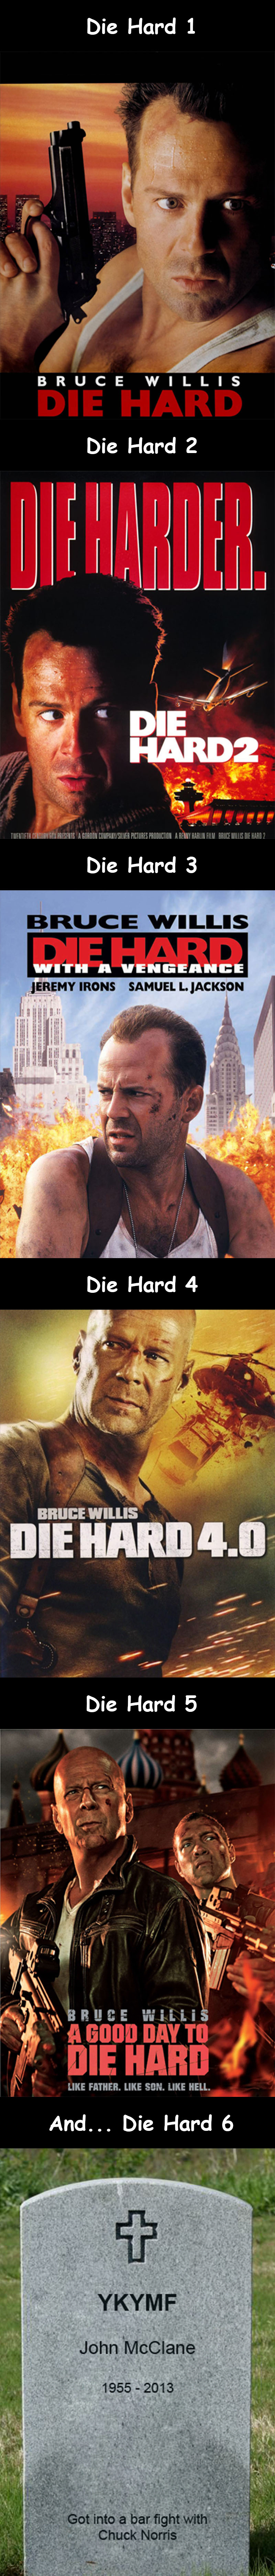 Die Hard 6 Meme 0